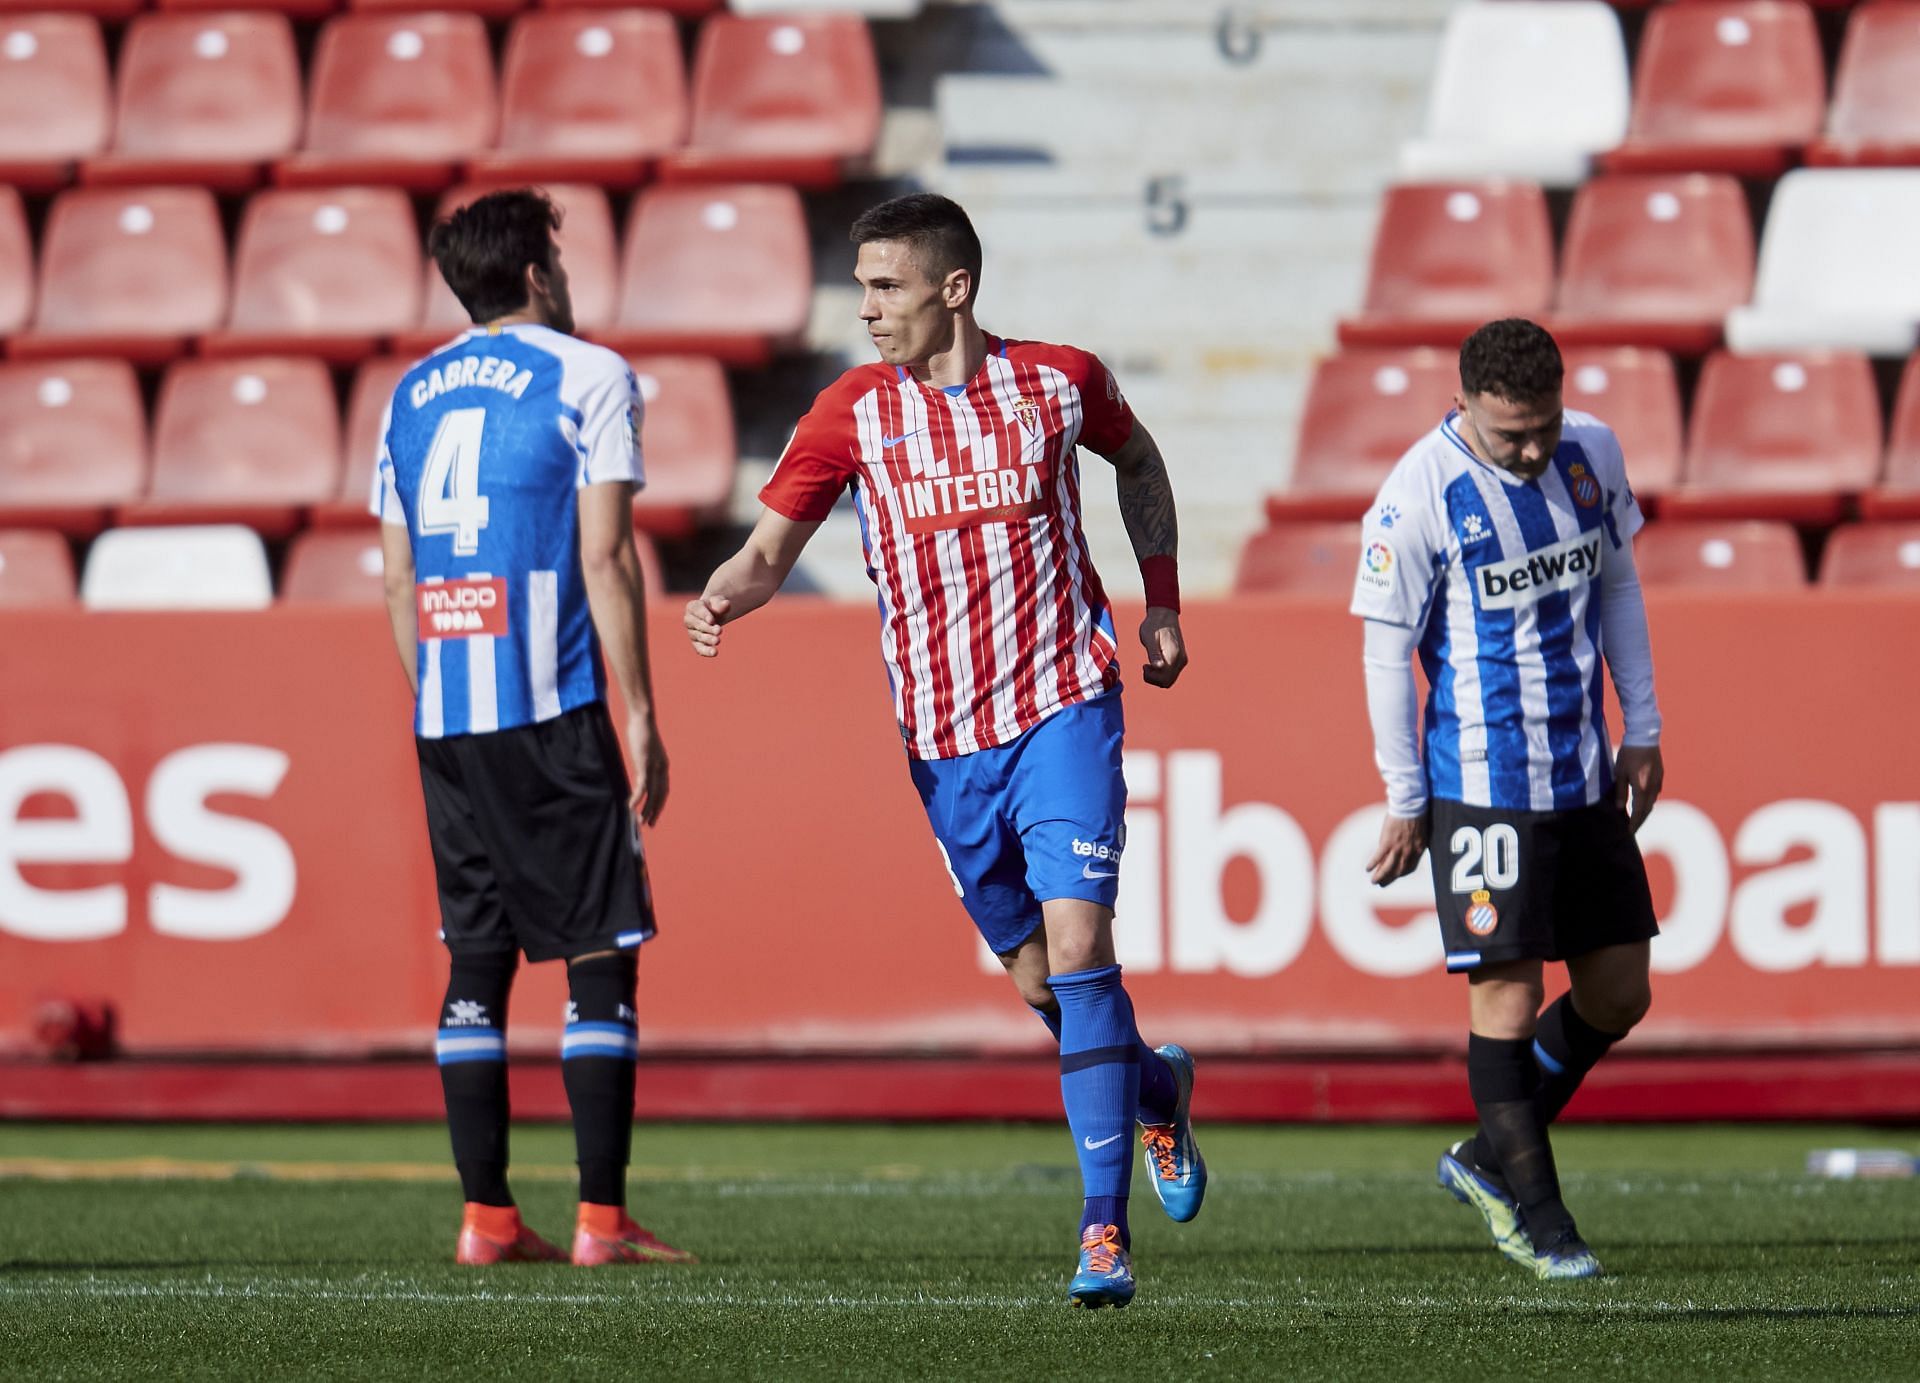 Sporting Gijon will face Almeria on Monday - Segunda Division